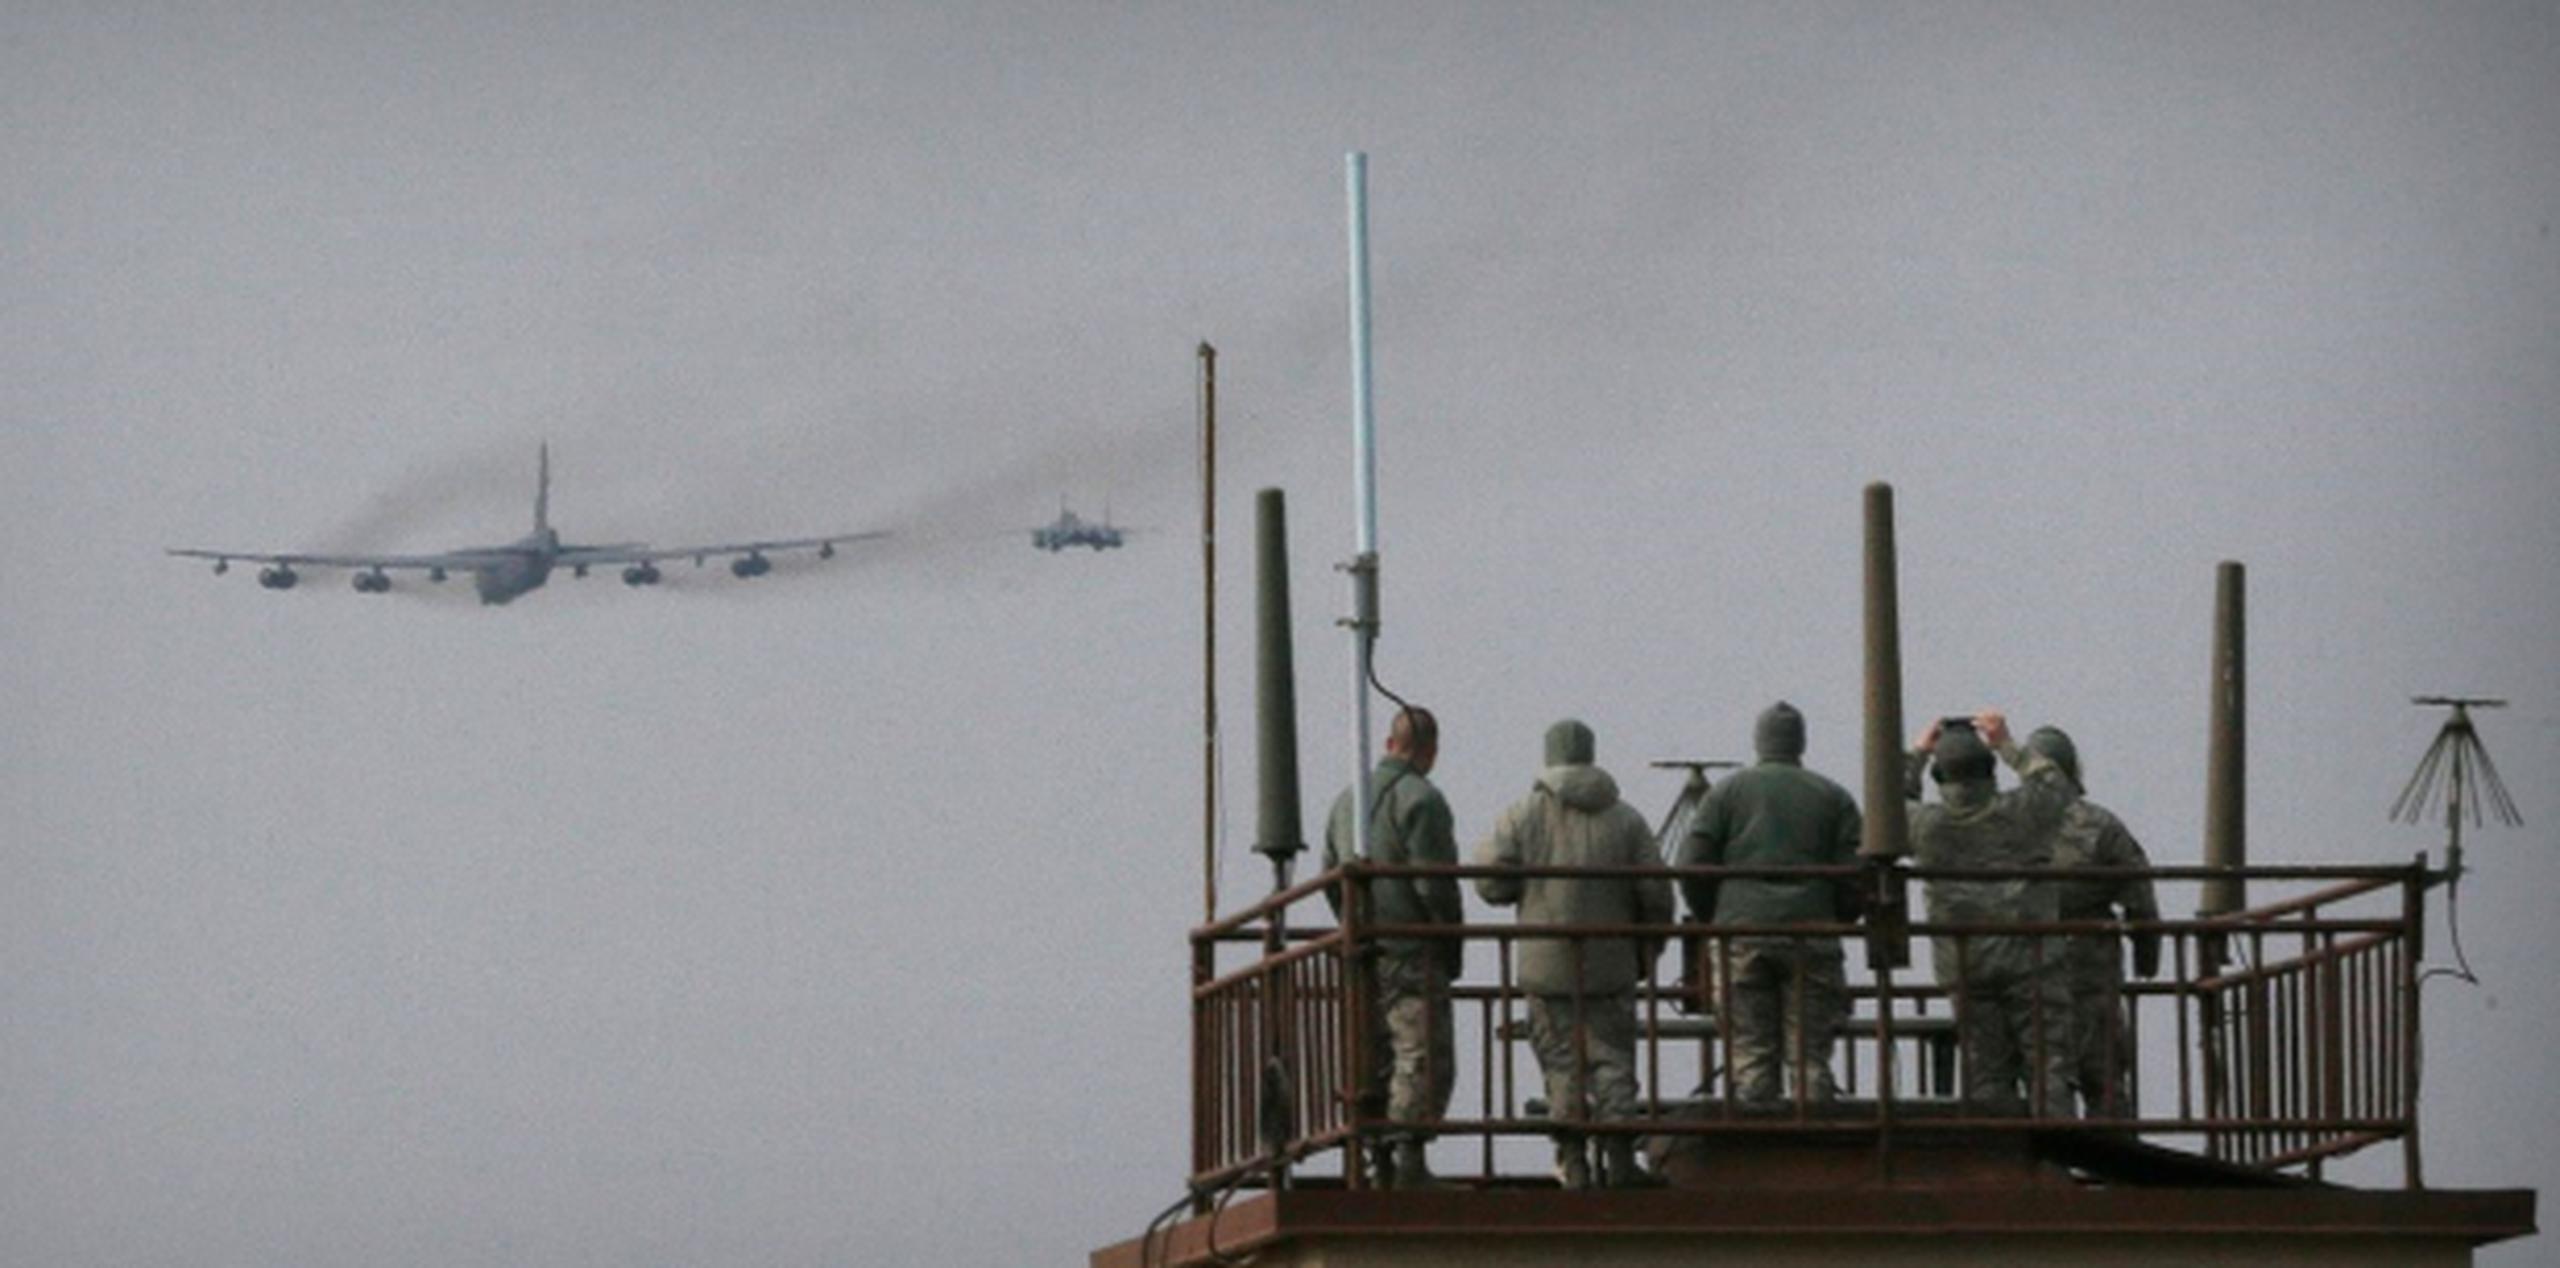 El enorme avión militar fue visto en la base aérea de Osan, cerca de Seúl. (AP)